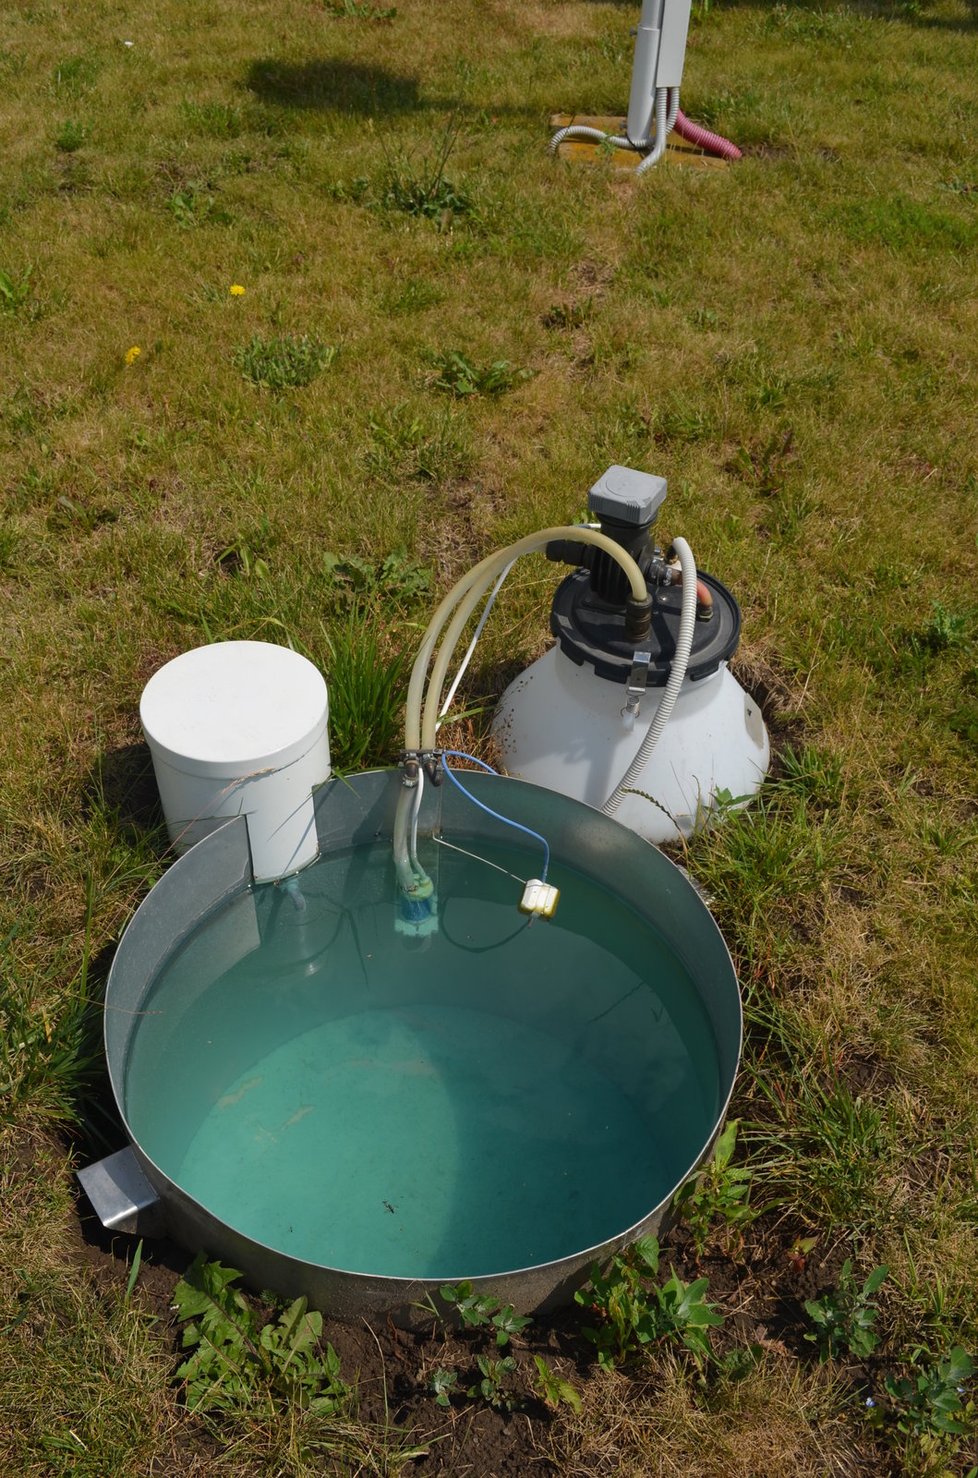 Výparoměr – měří rychlost vypařování vody.